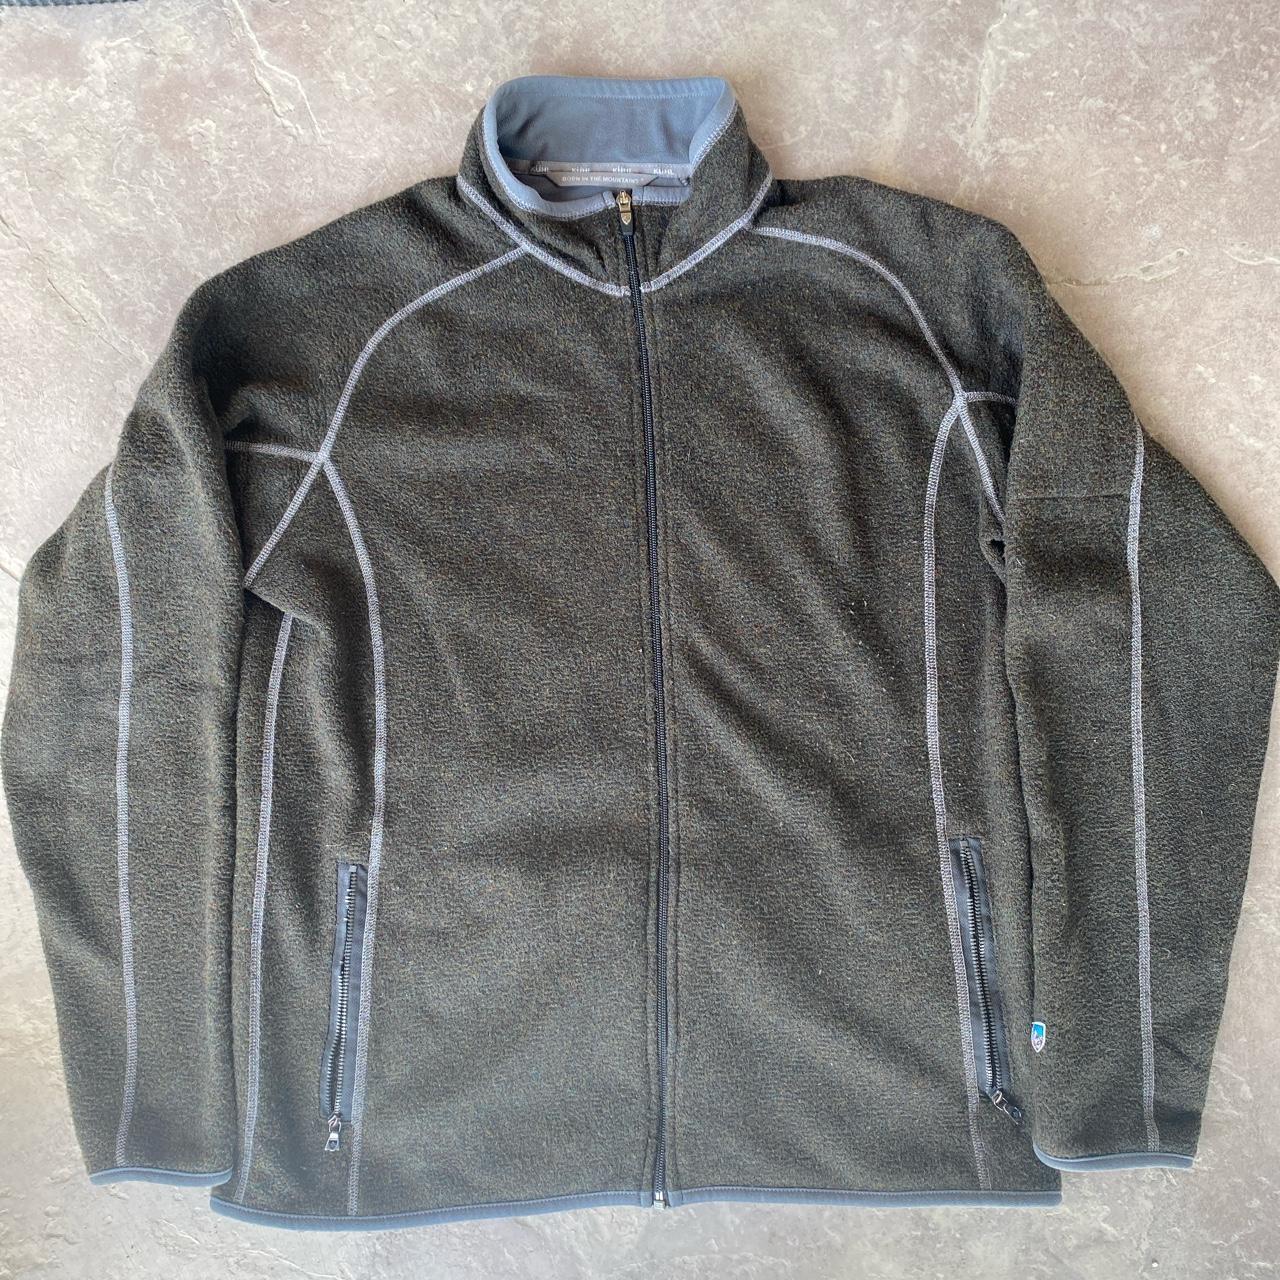 Vintage Y2K Brown Fleece Jacket by Kuhl -Good... - Depop